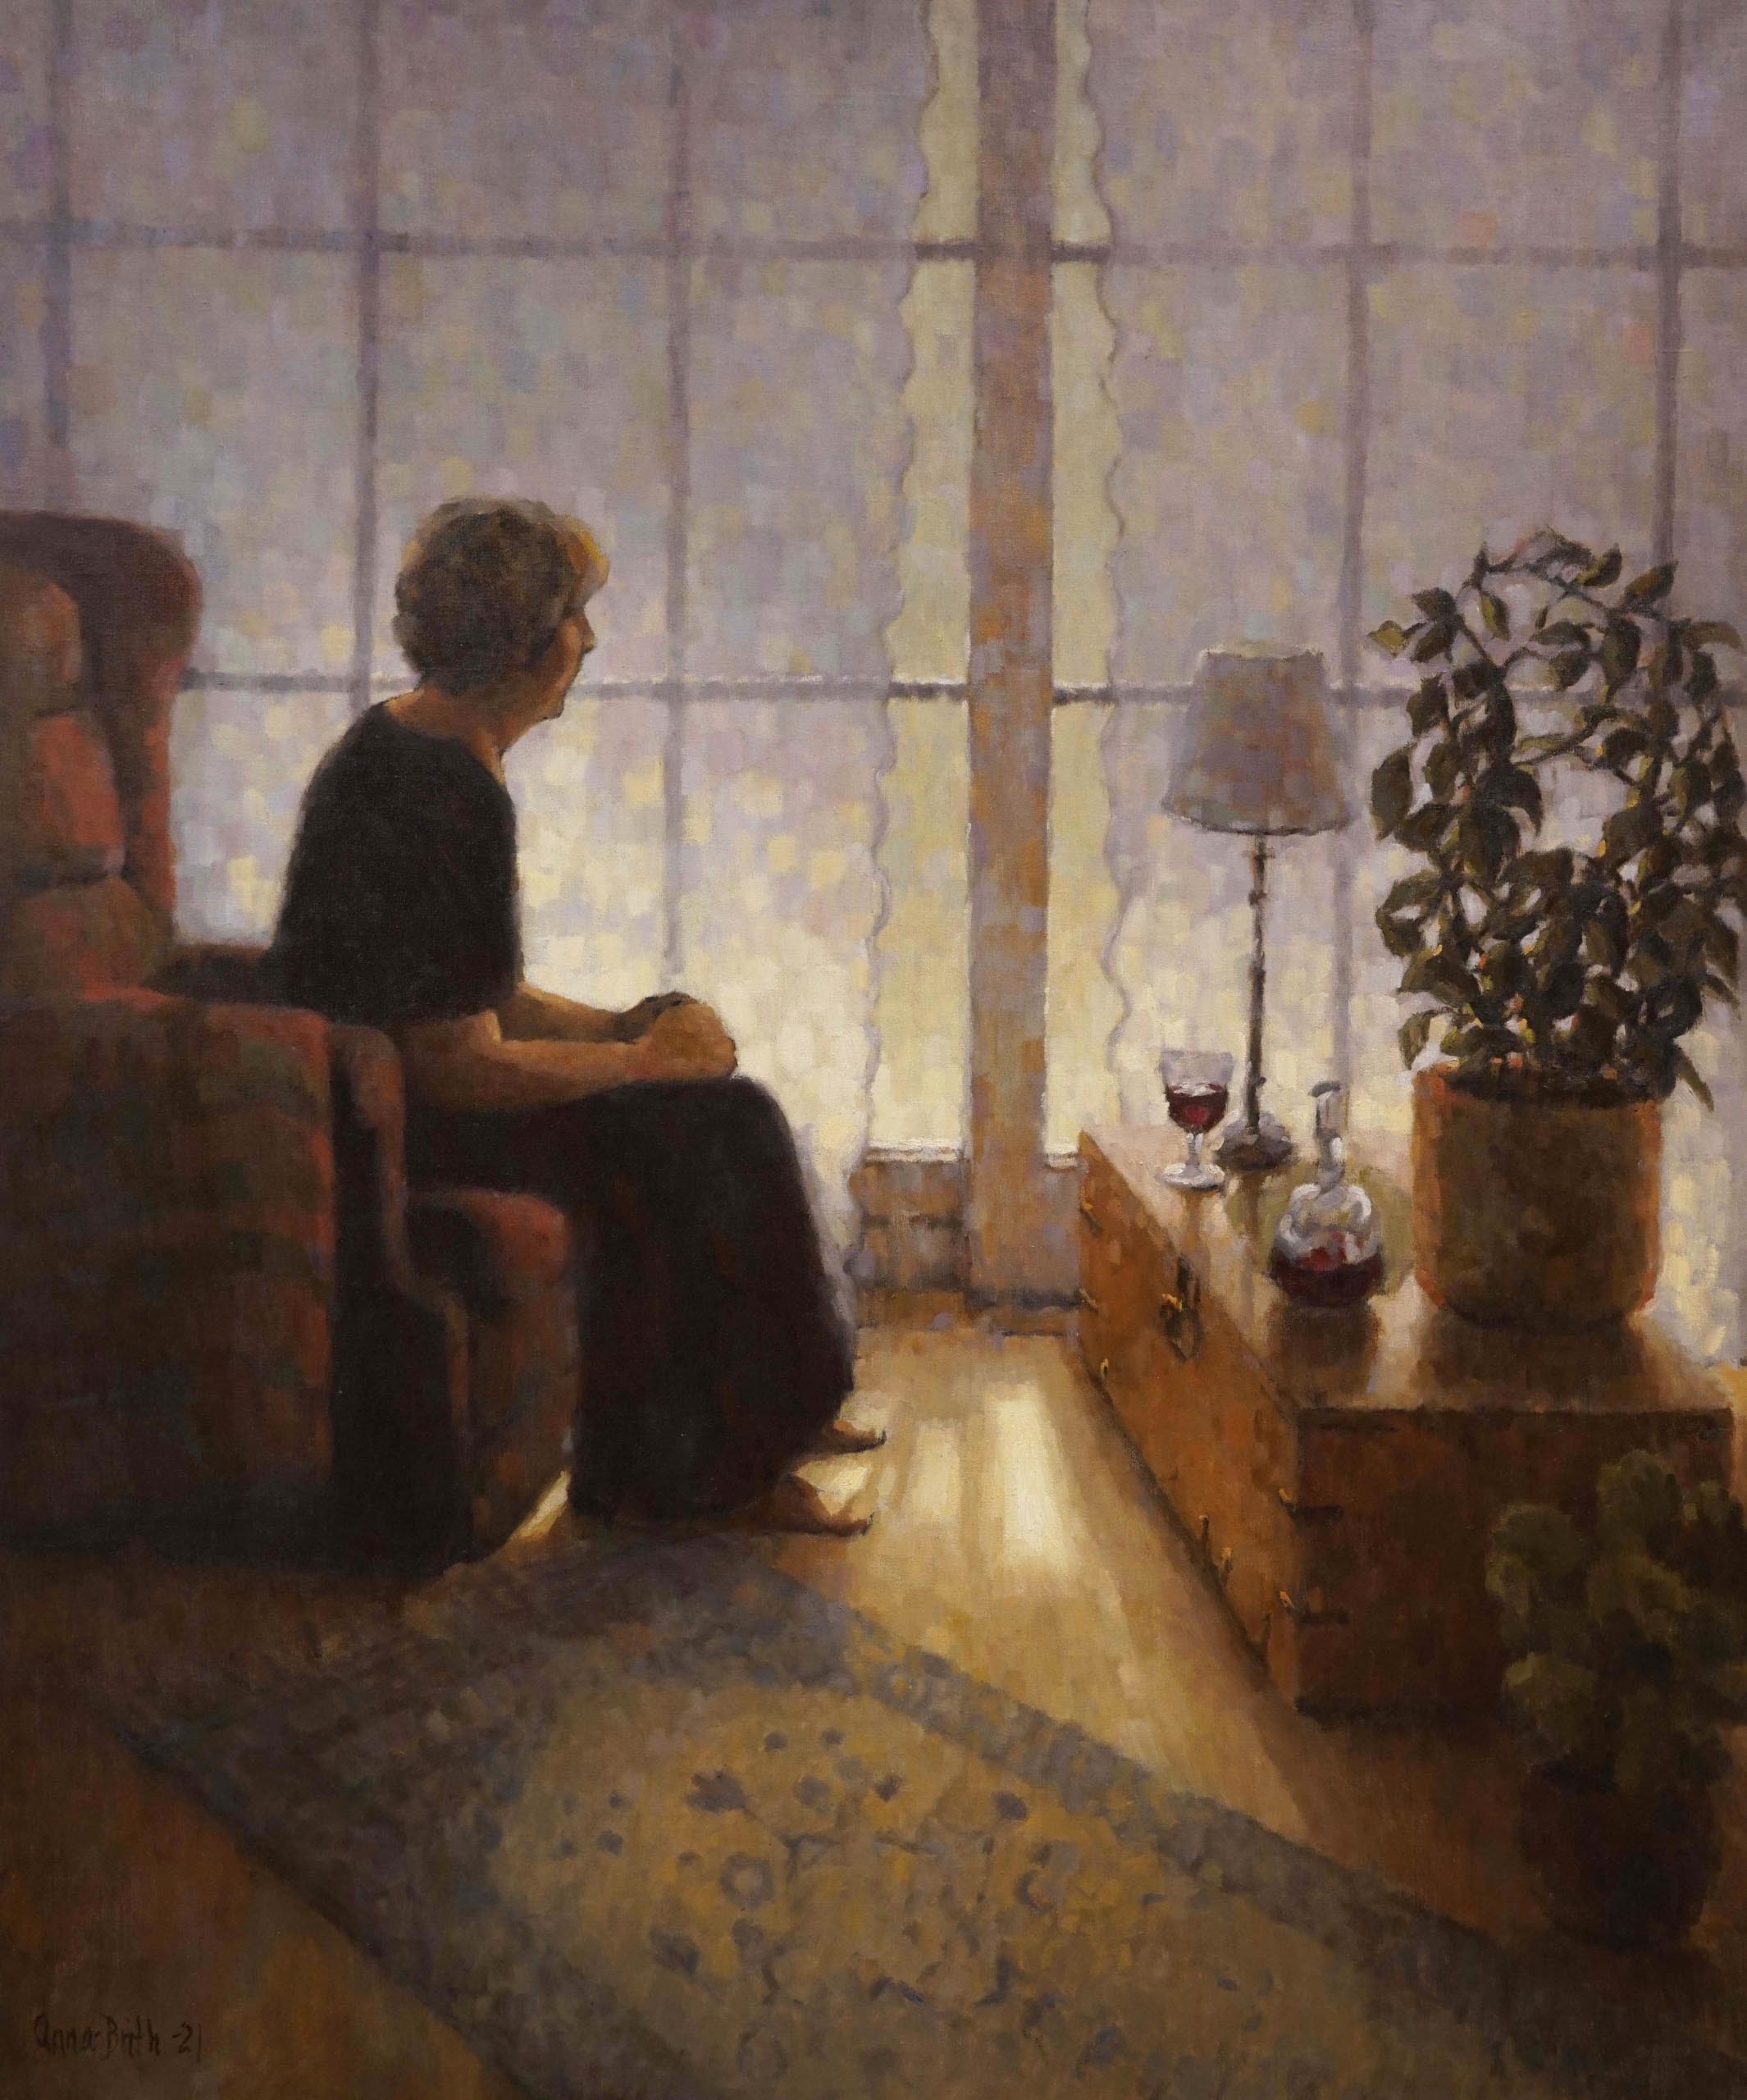 Anna-Brith Arntsen, Solitude, Oil on linen, 140 x 116 cm, 2020